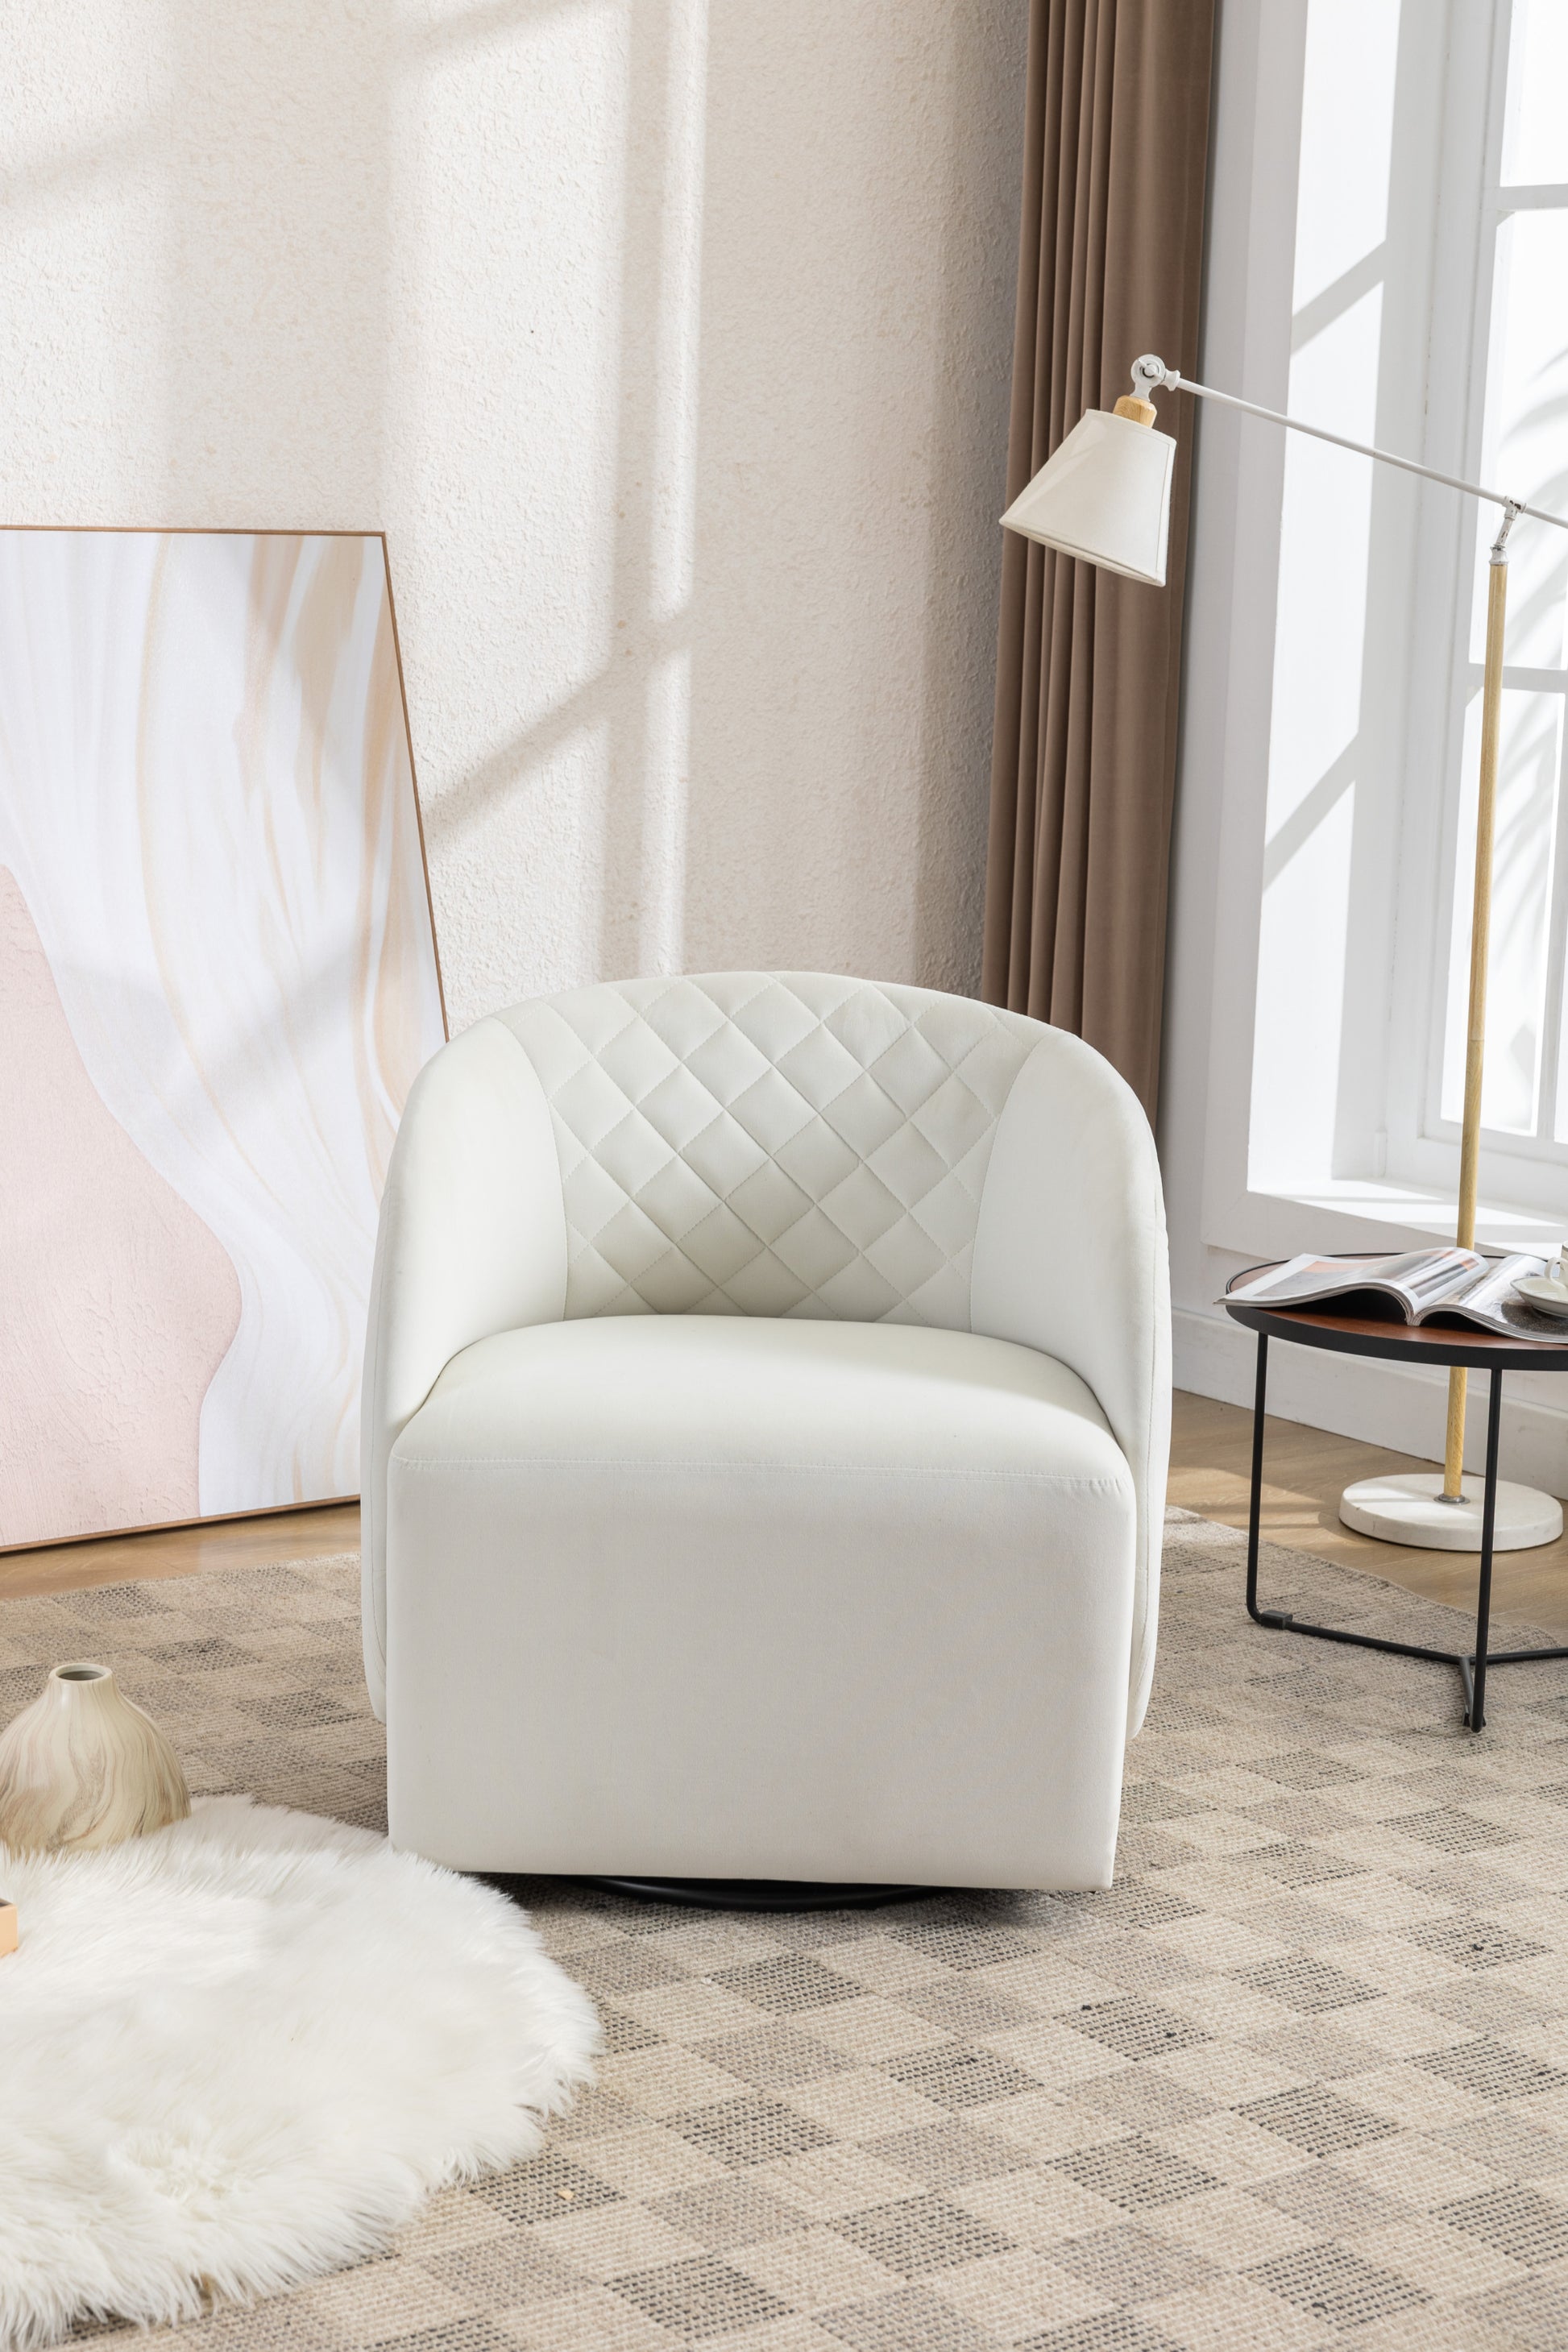 Velvet Fabric Swivel Chair For Living Room,Ivory - Enova Luxe Home Store